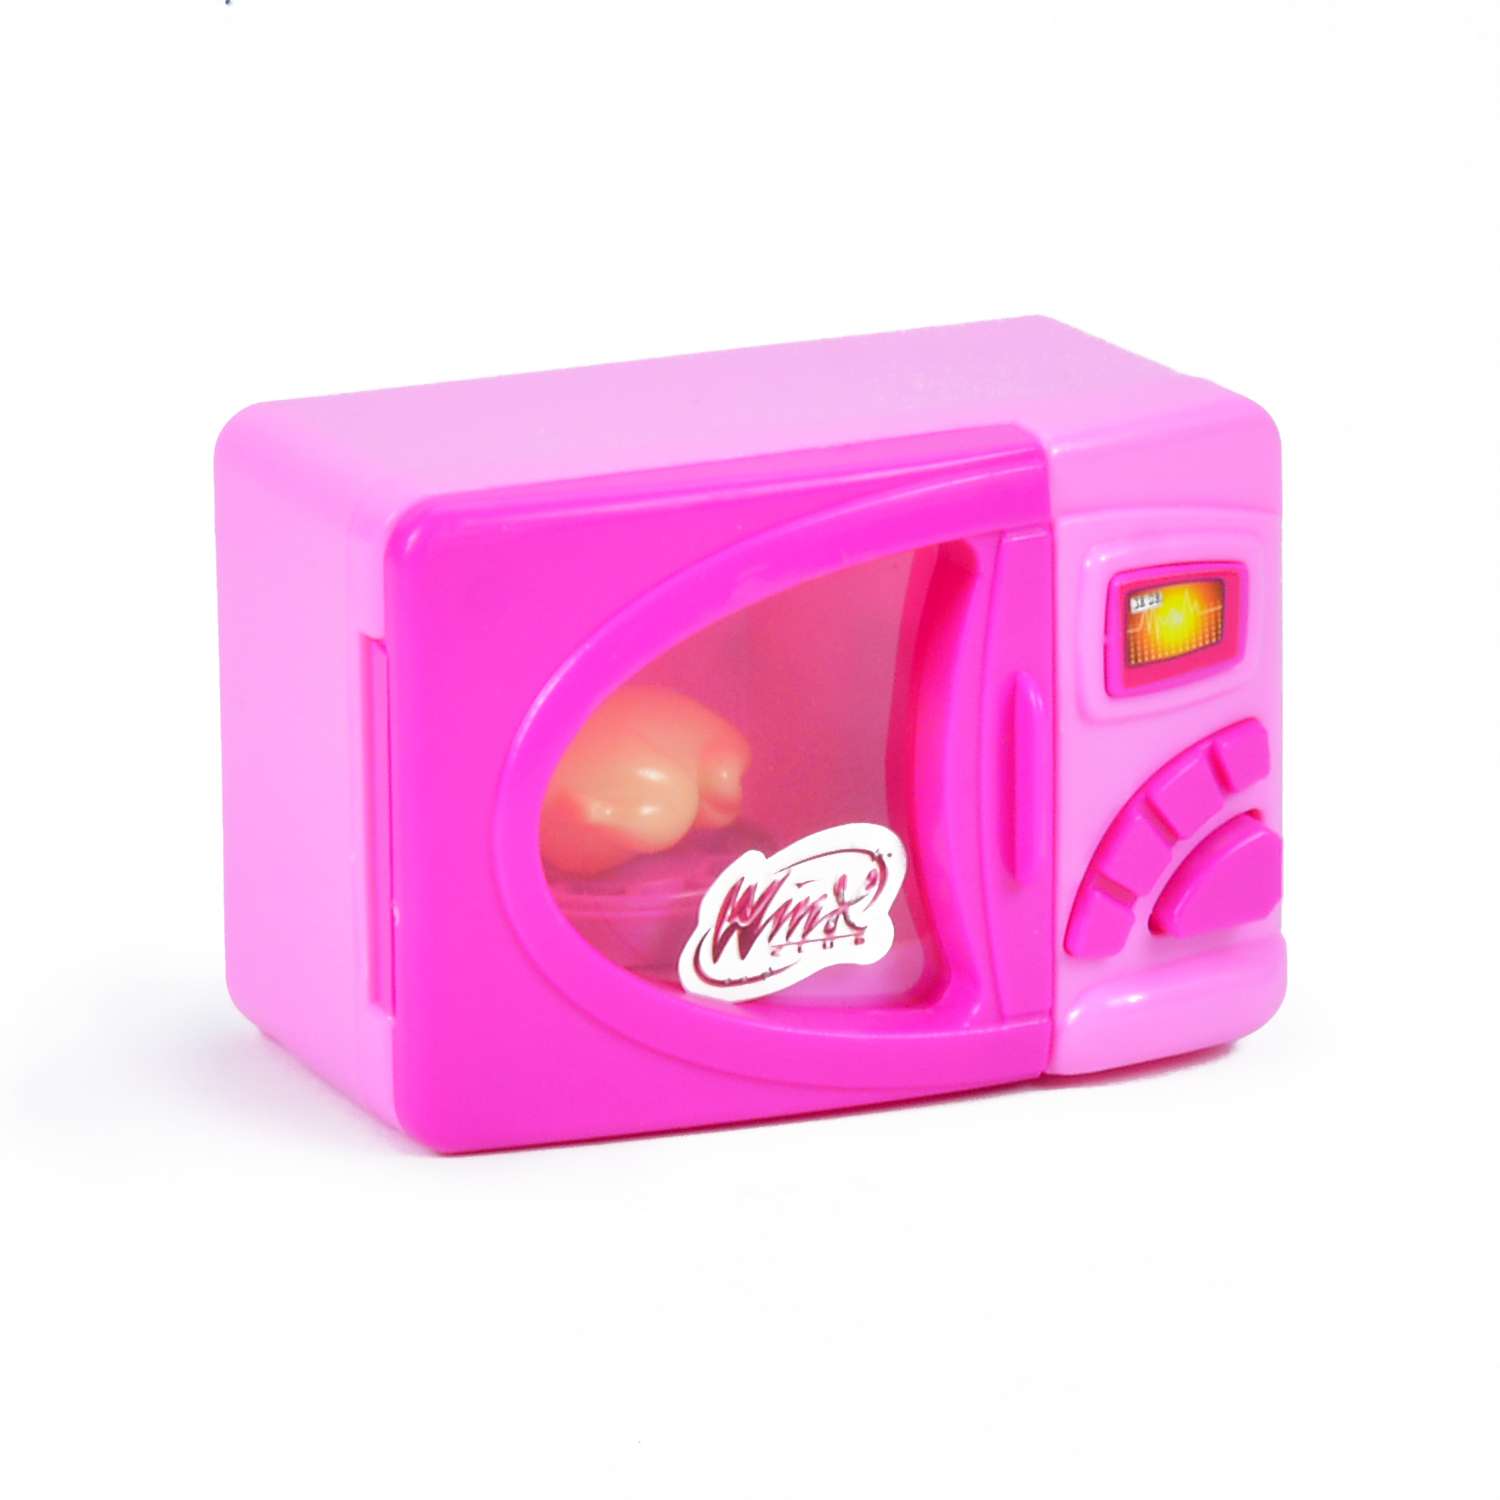 Микроволновая печь Winx игровая со светом - фото 1